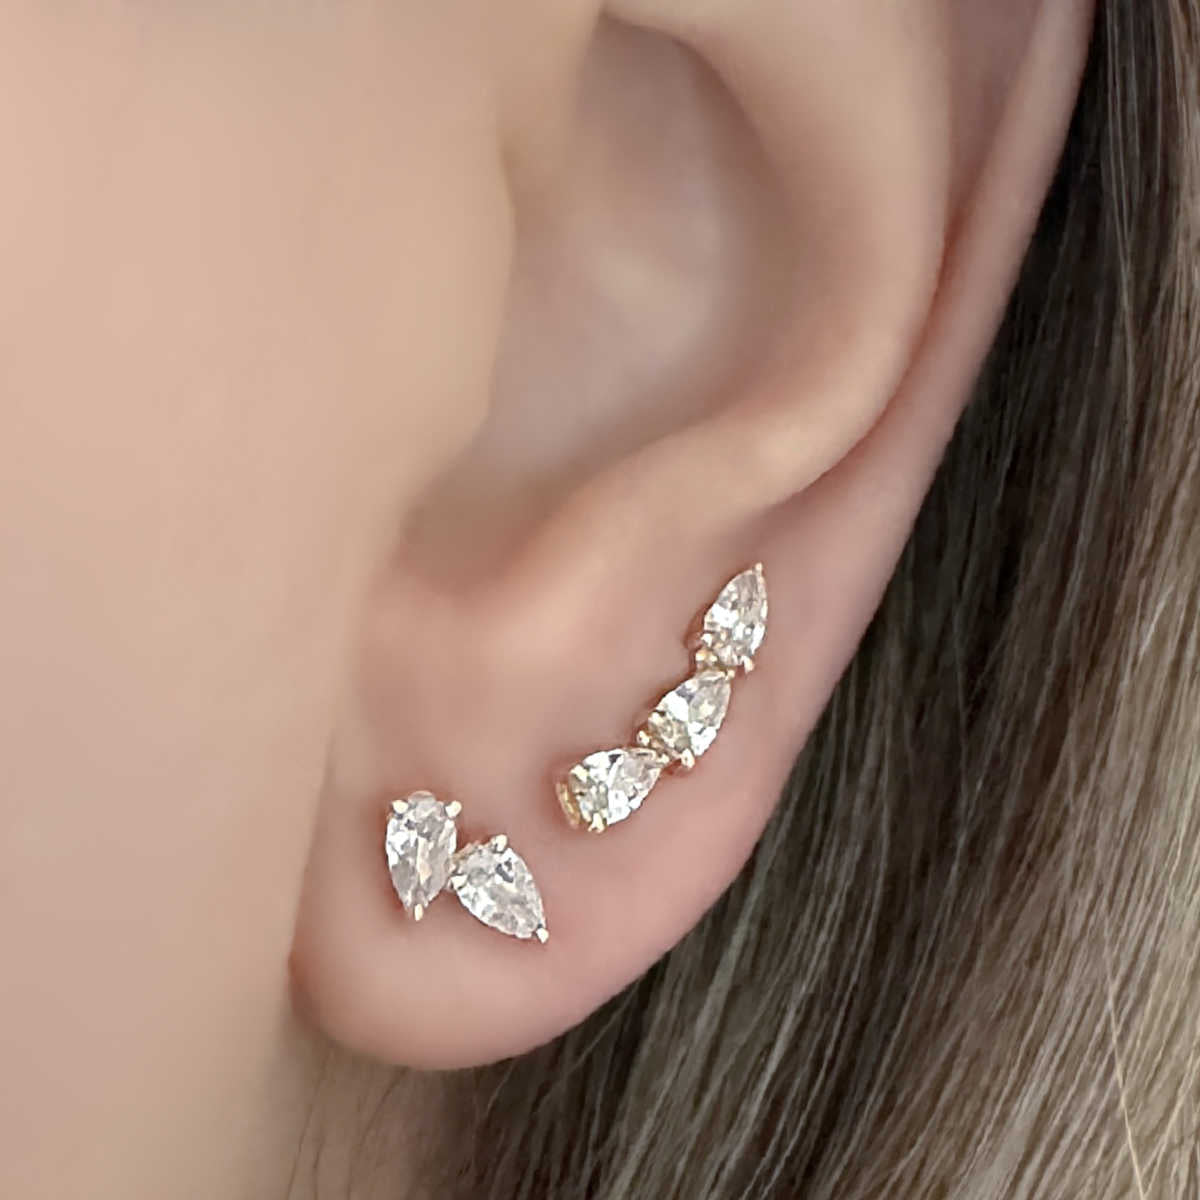 Pear Shaped Earrings in 14k Gold | Two Stone Tear Drop Studs on Model